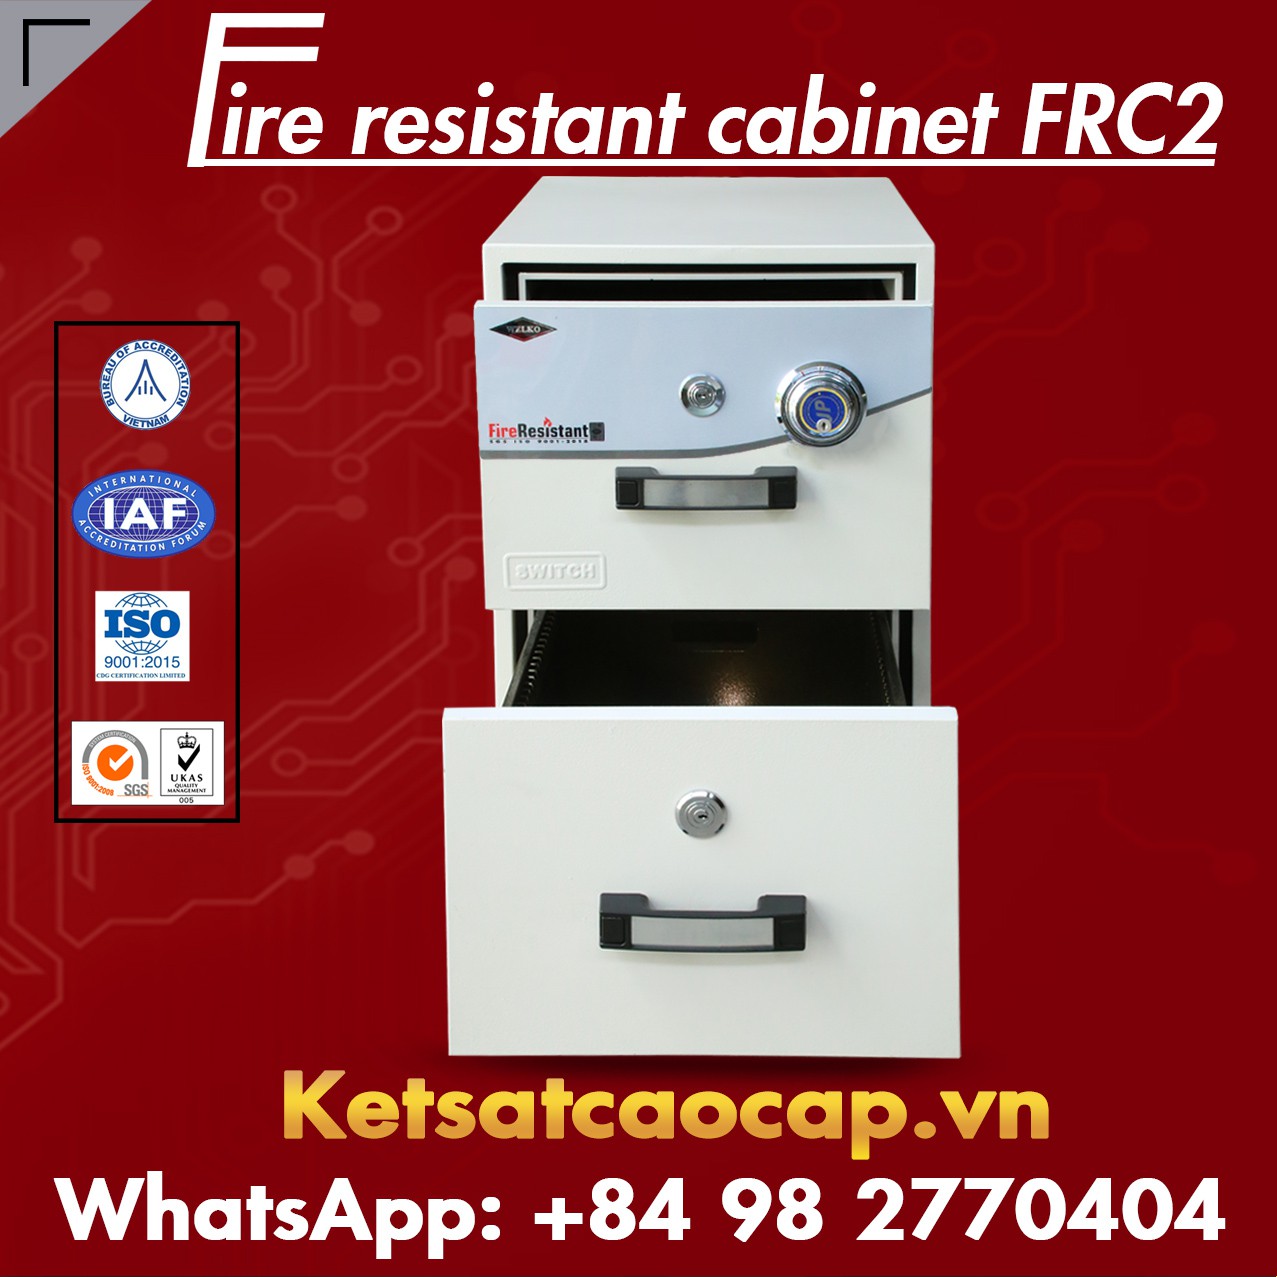 hình ảnh sản phẩm Tủ Sắt Chống Cháy WELKO FRC2 DK White